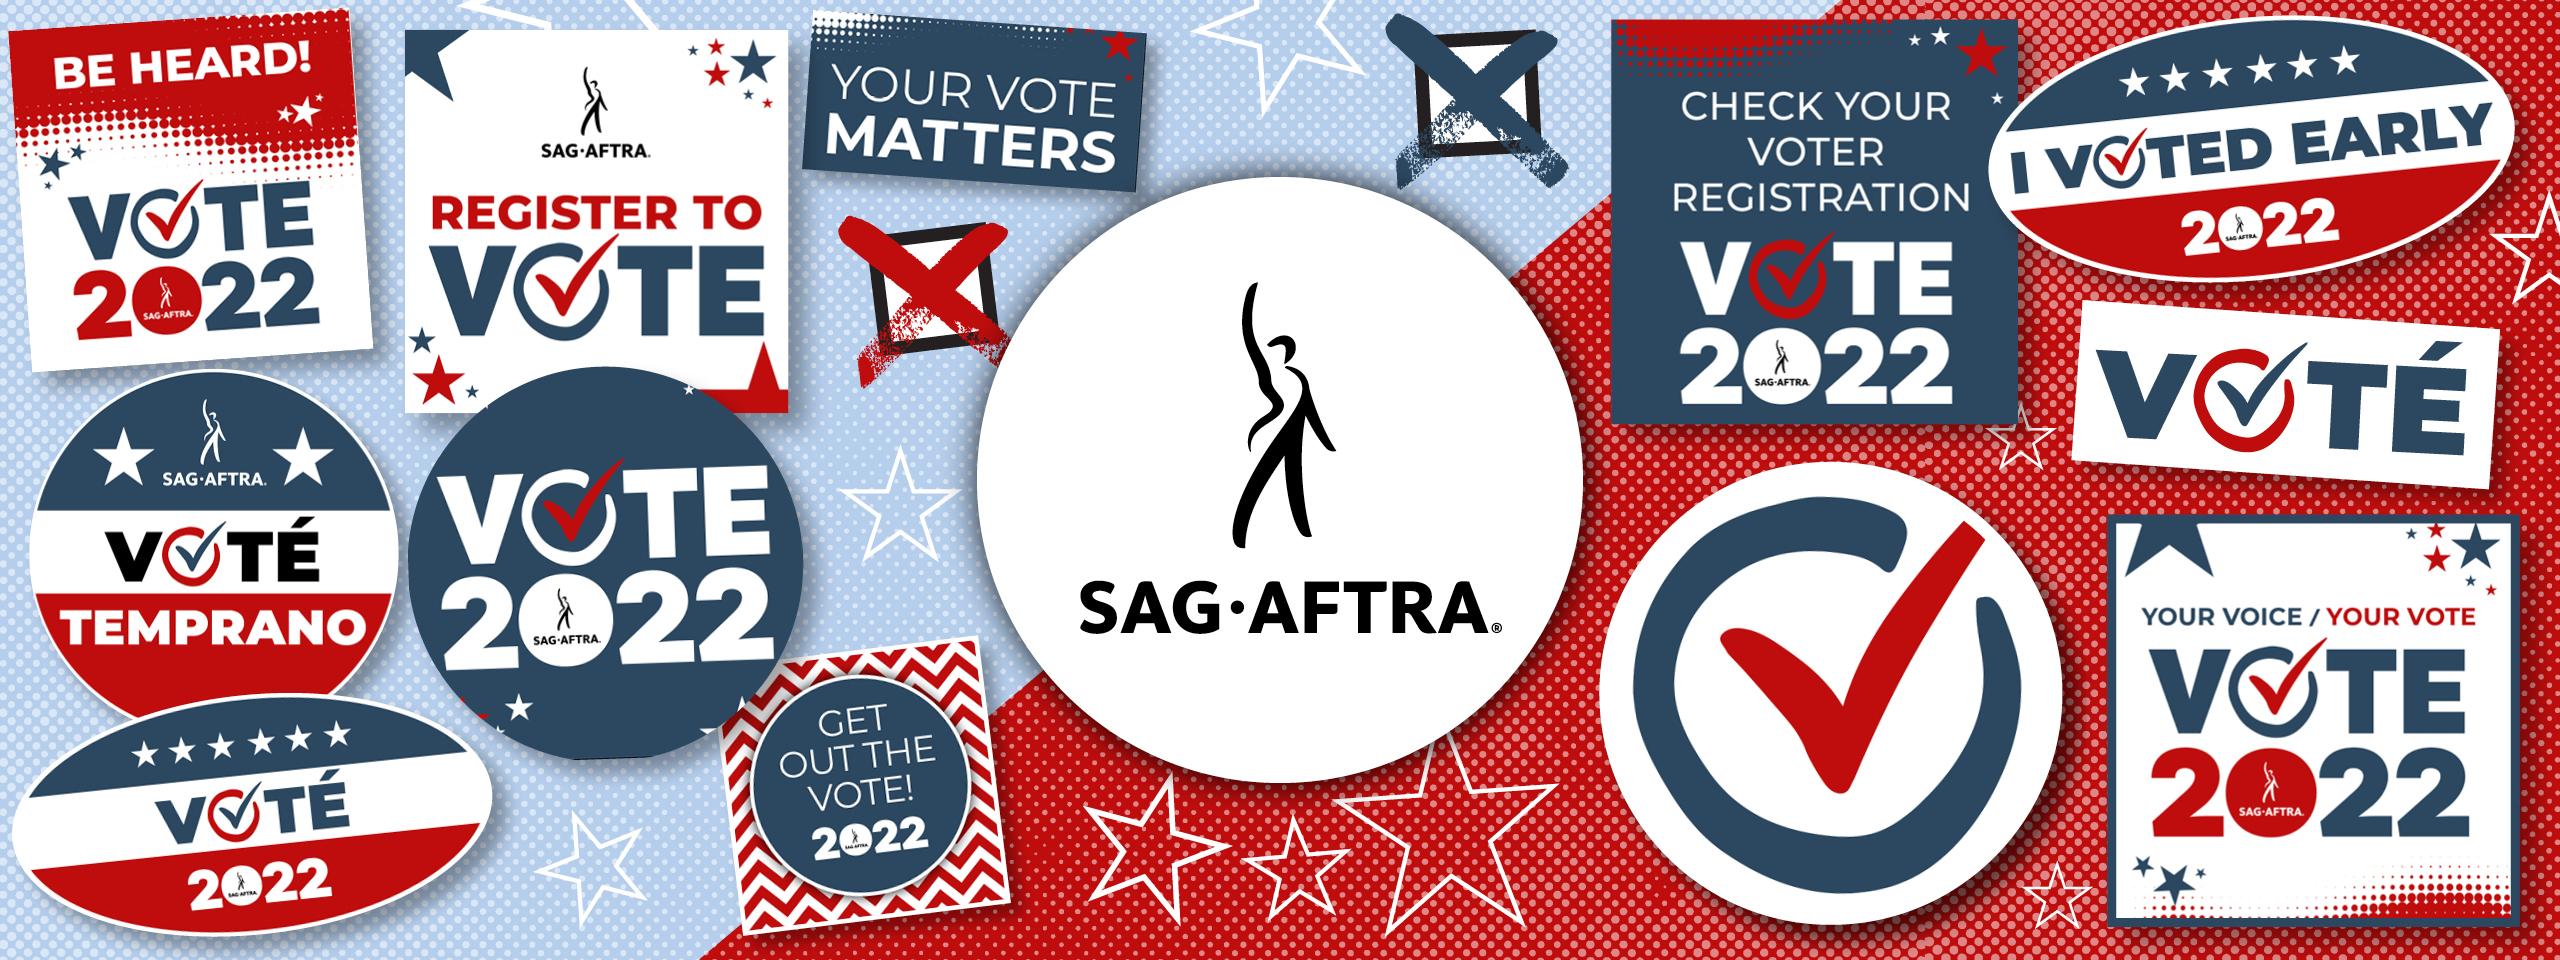 Vote 2022 Web Banner con el logotipo de SAG-AFTRA centrado